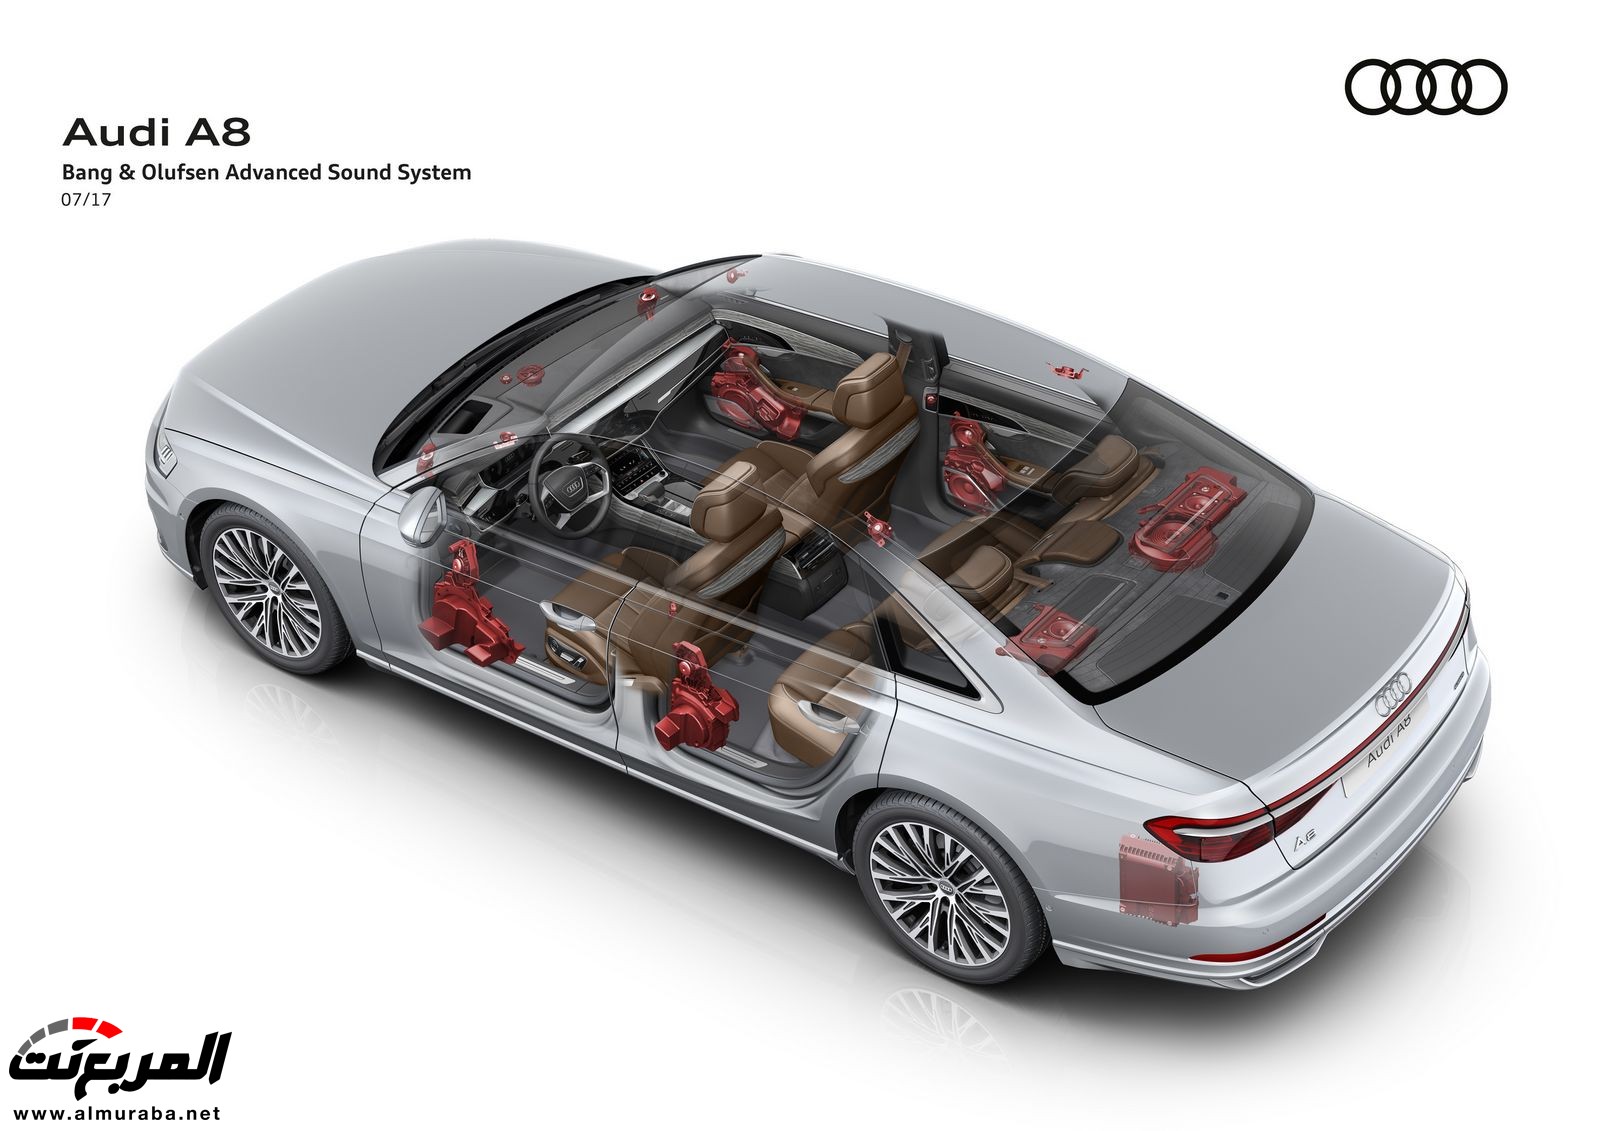 أودي A8 2018 الجديدة كلياً تكشف نفسها بتصميم وتقنيات متطورة "معلومات + 100 صورة" Audi A8 91